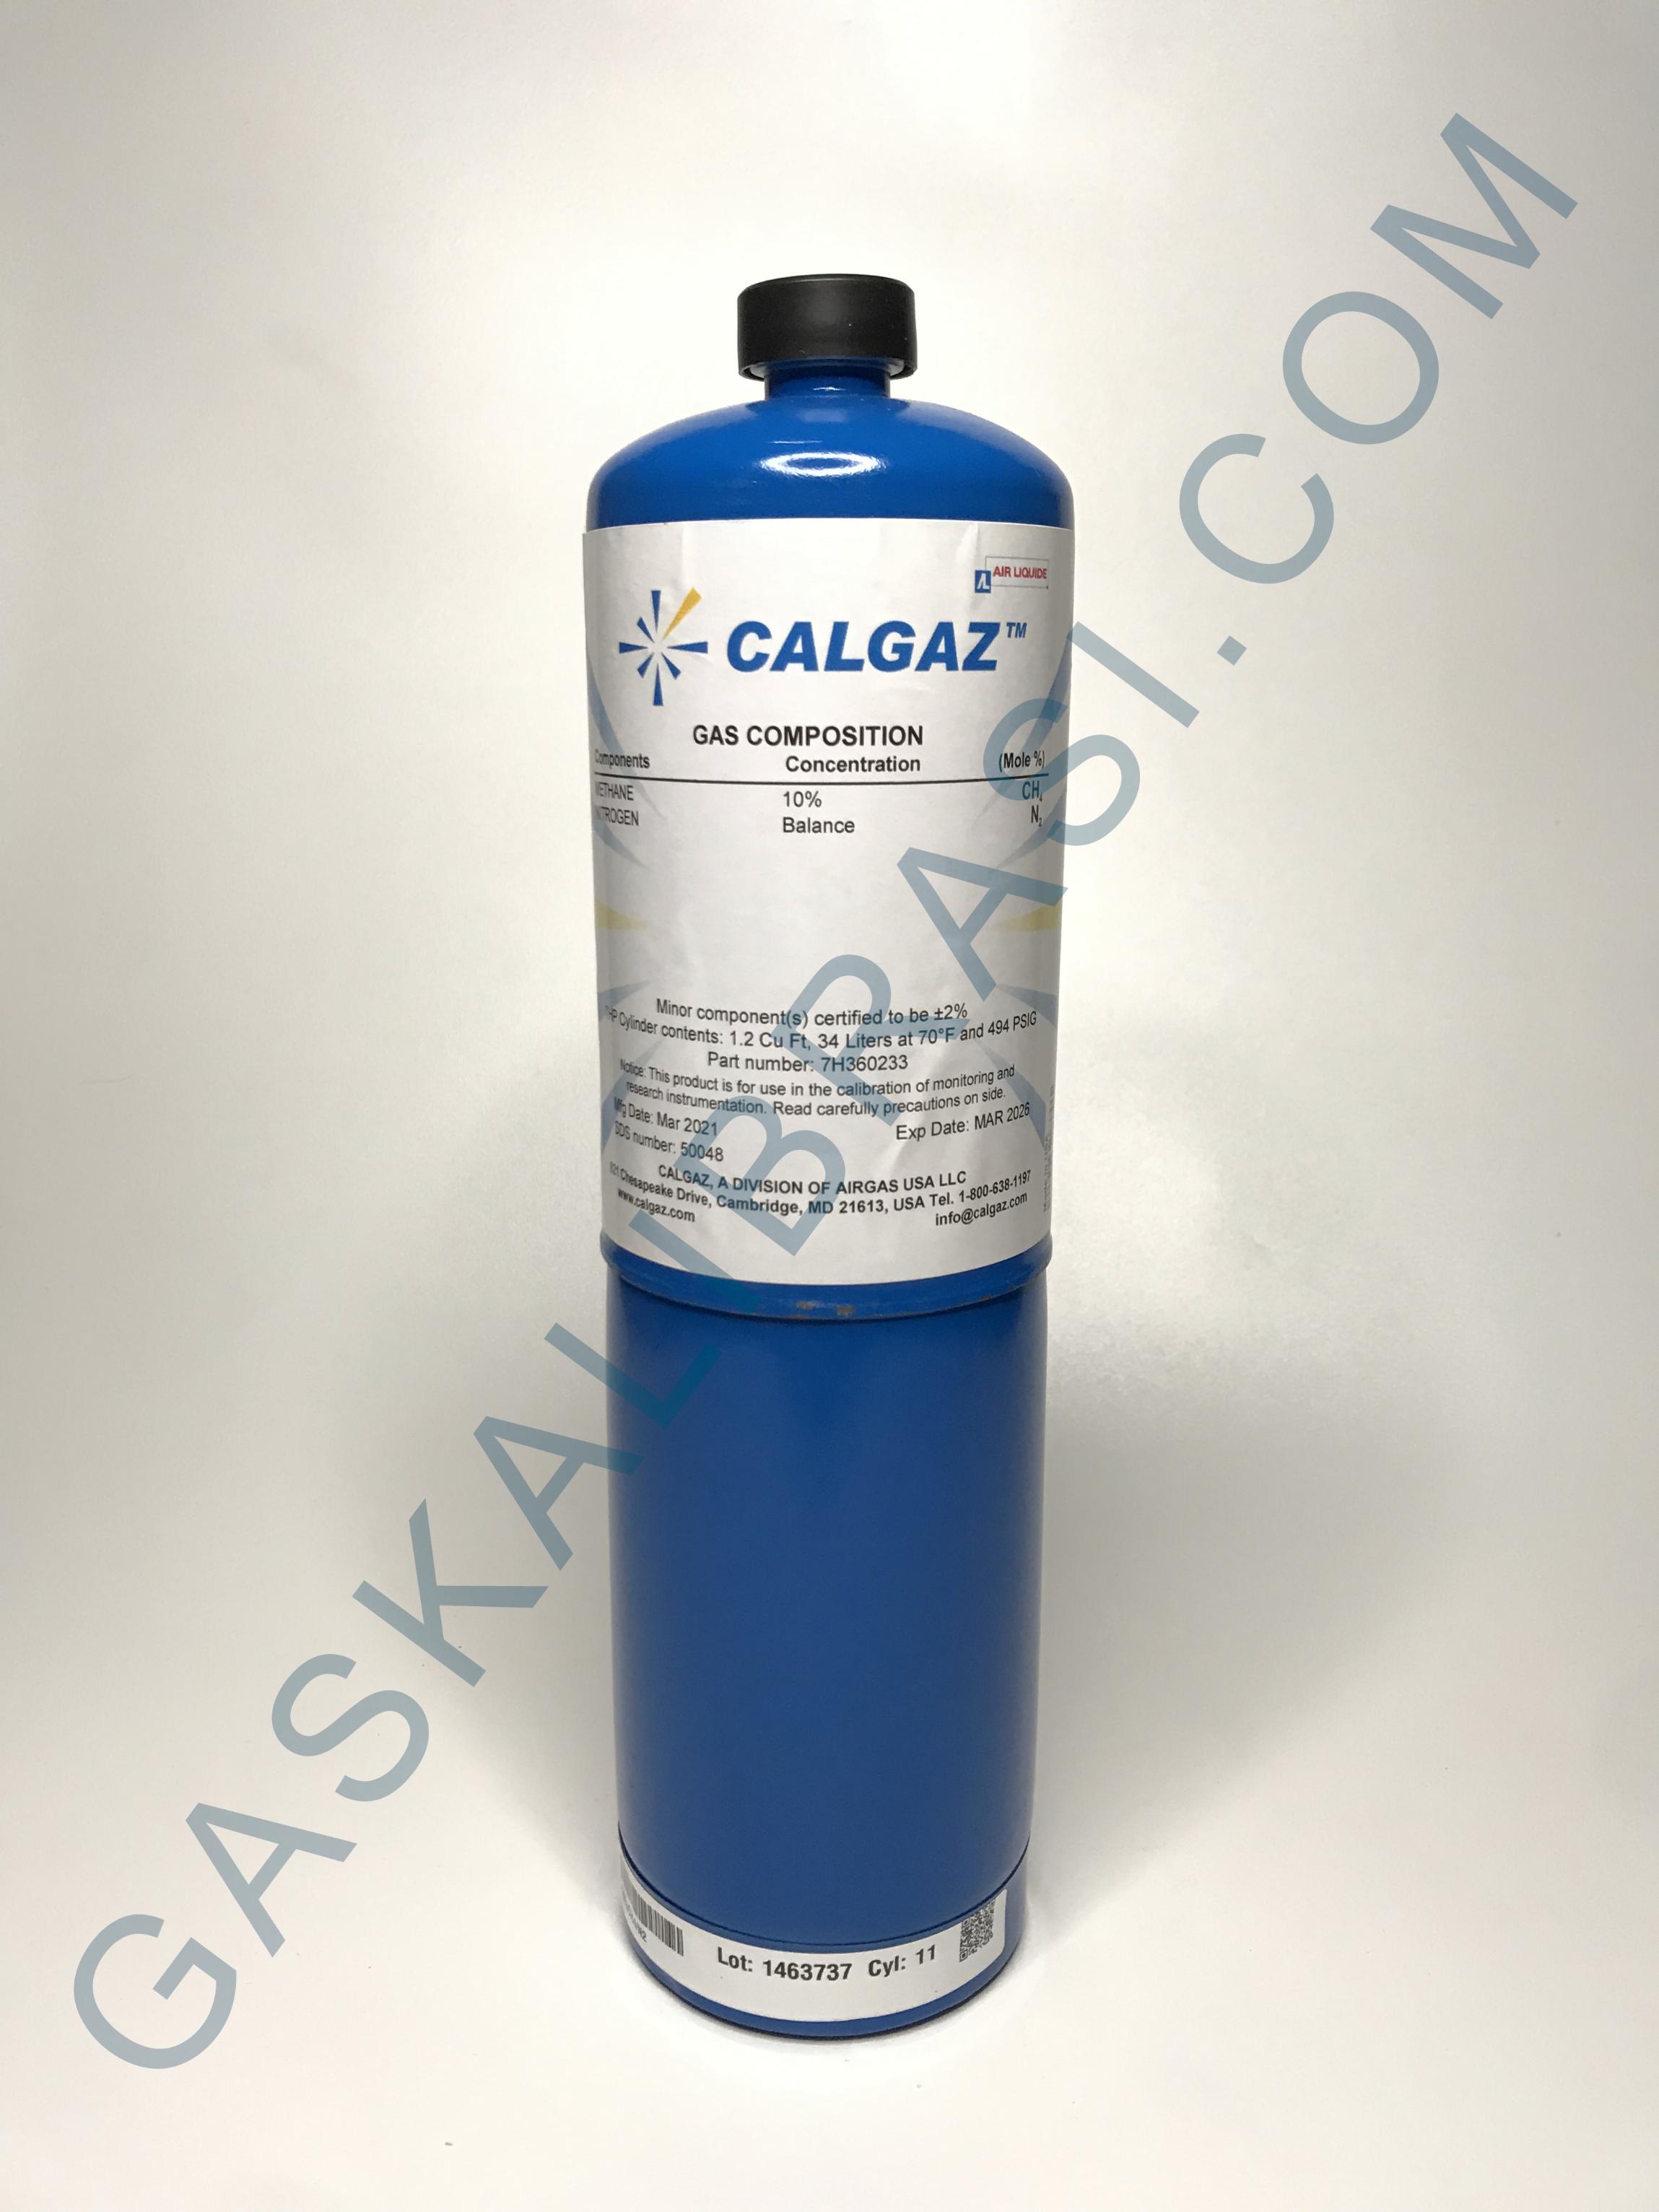 Gaskalibrasi - GAS KALIBRASI / SPAN GAS CALGAZ (SINGLE GAS) 34 LITERS